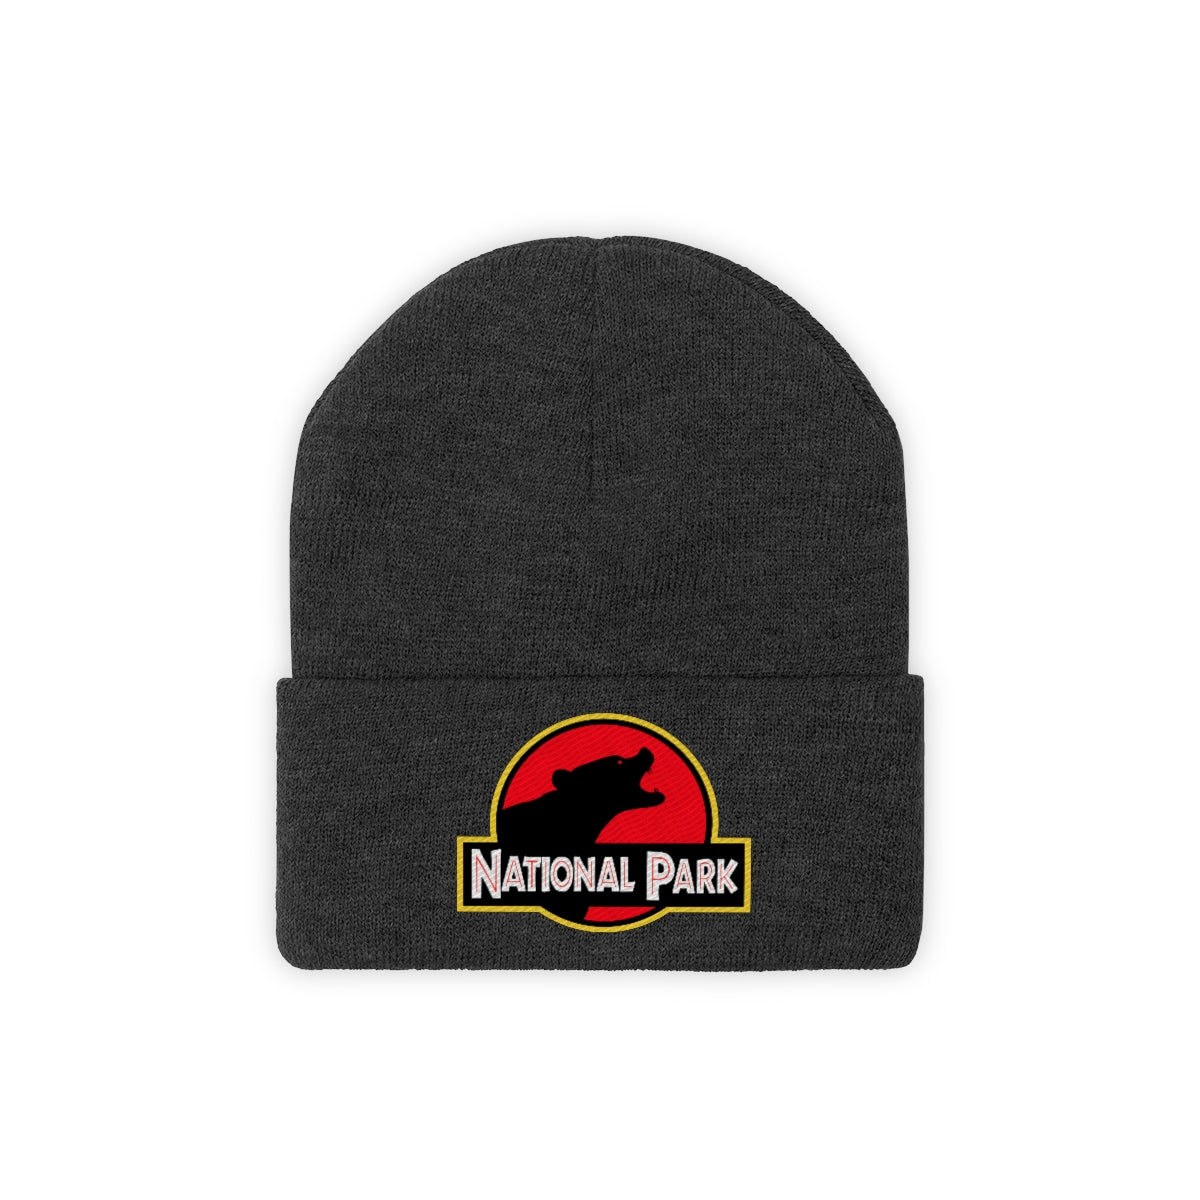 Bear National Park Hat - Knit Beanie Sewn Parody Logo